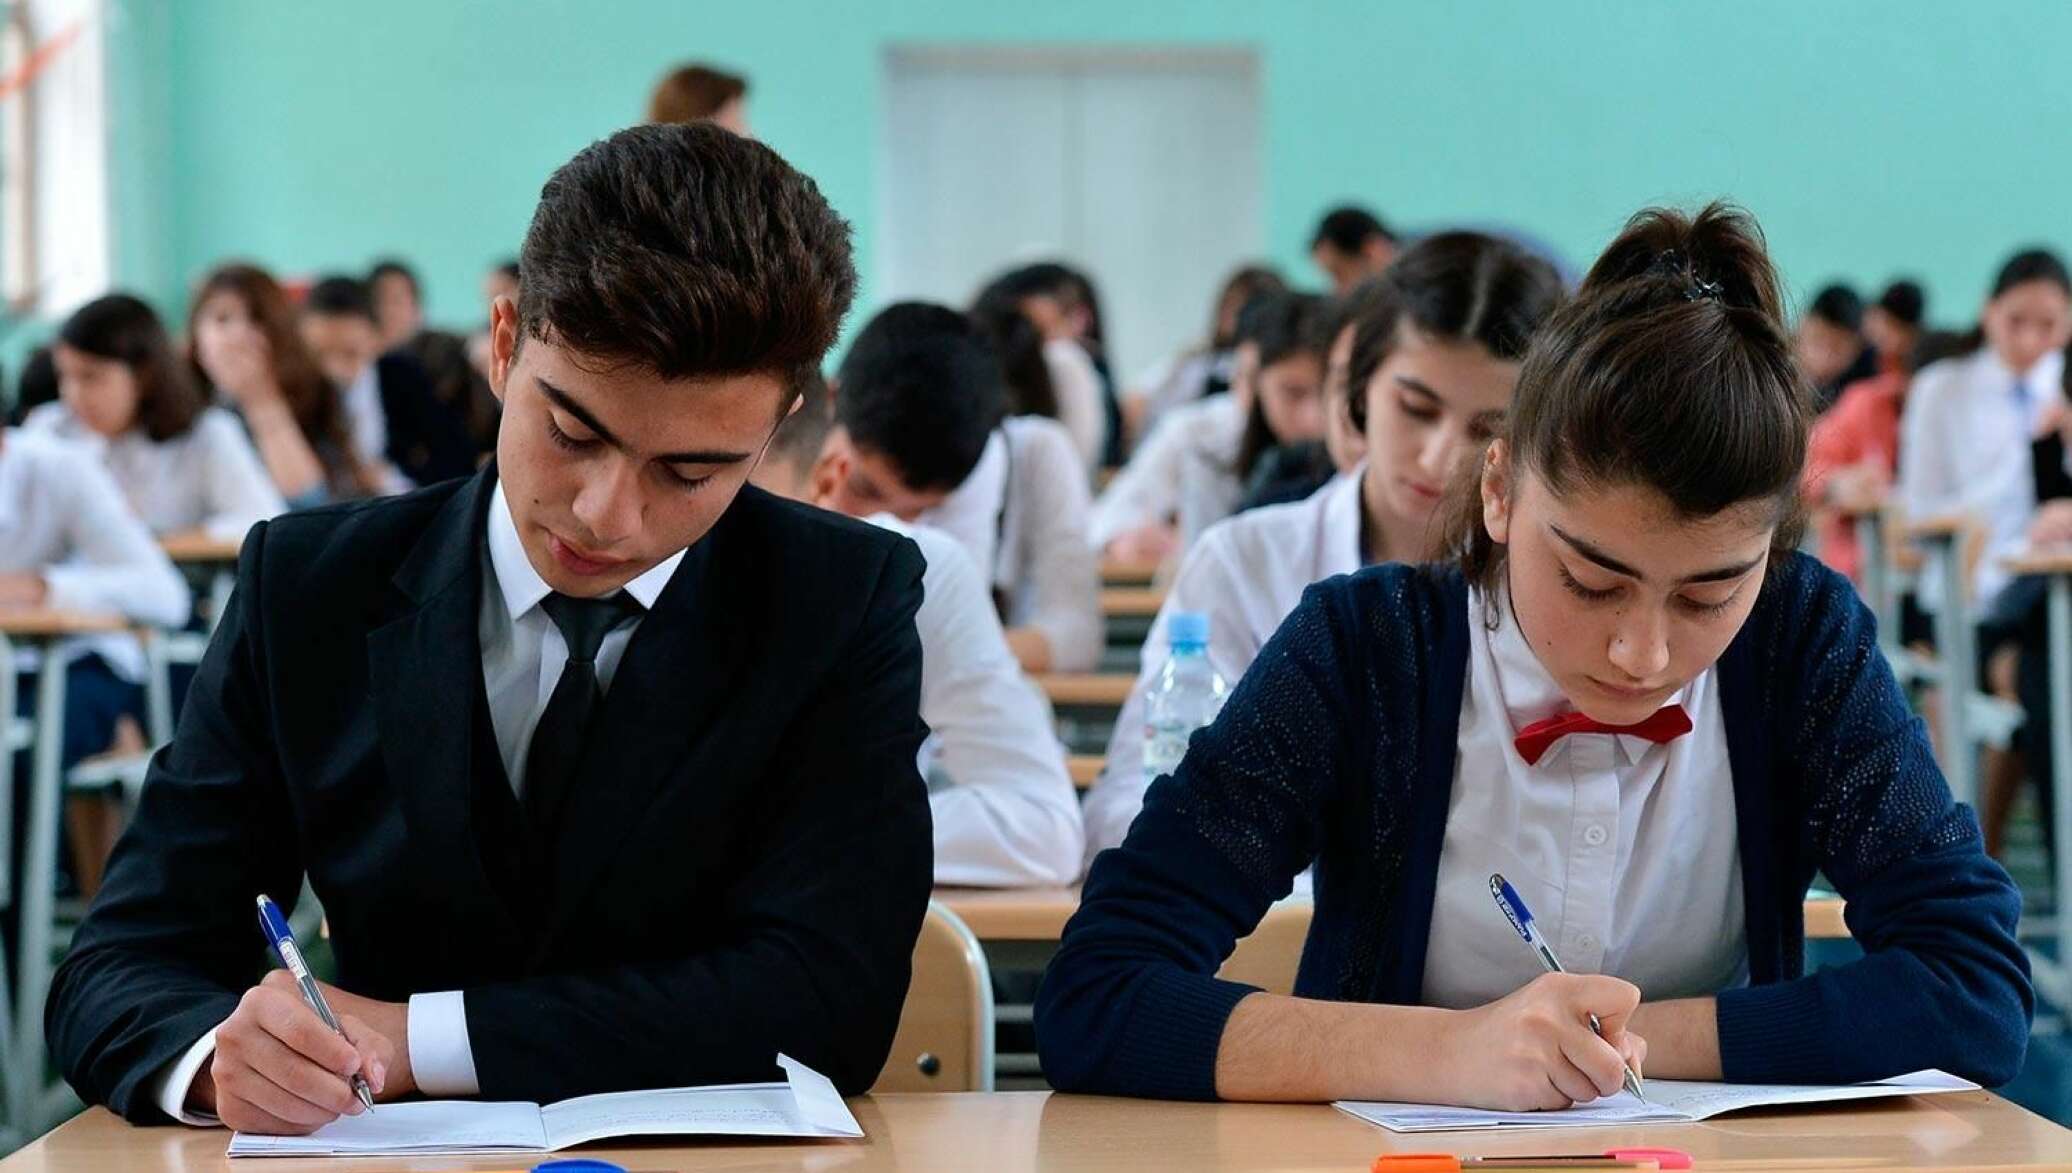 В Узбекистане вузы будут самостоятельно устанавливать внешний вид студентов 